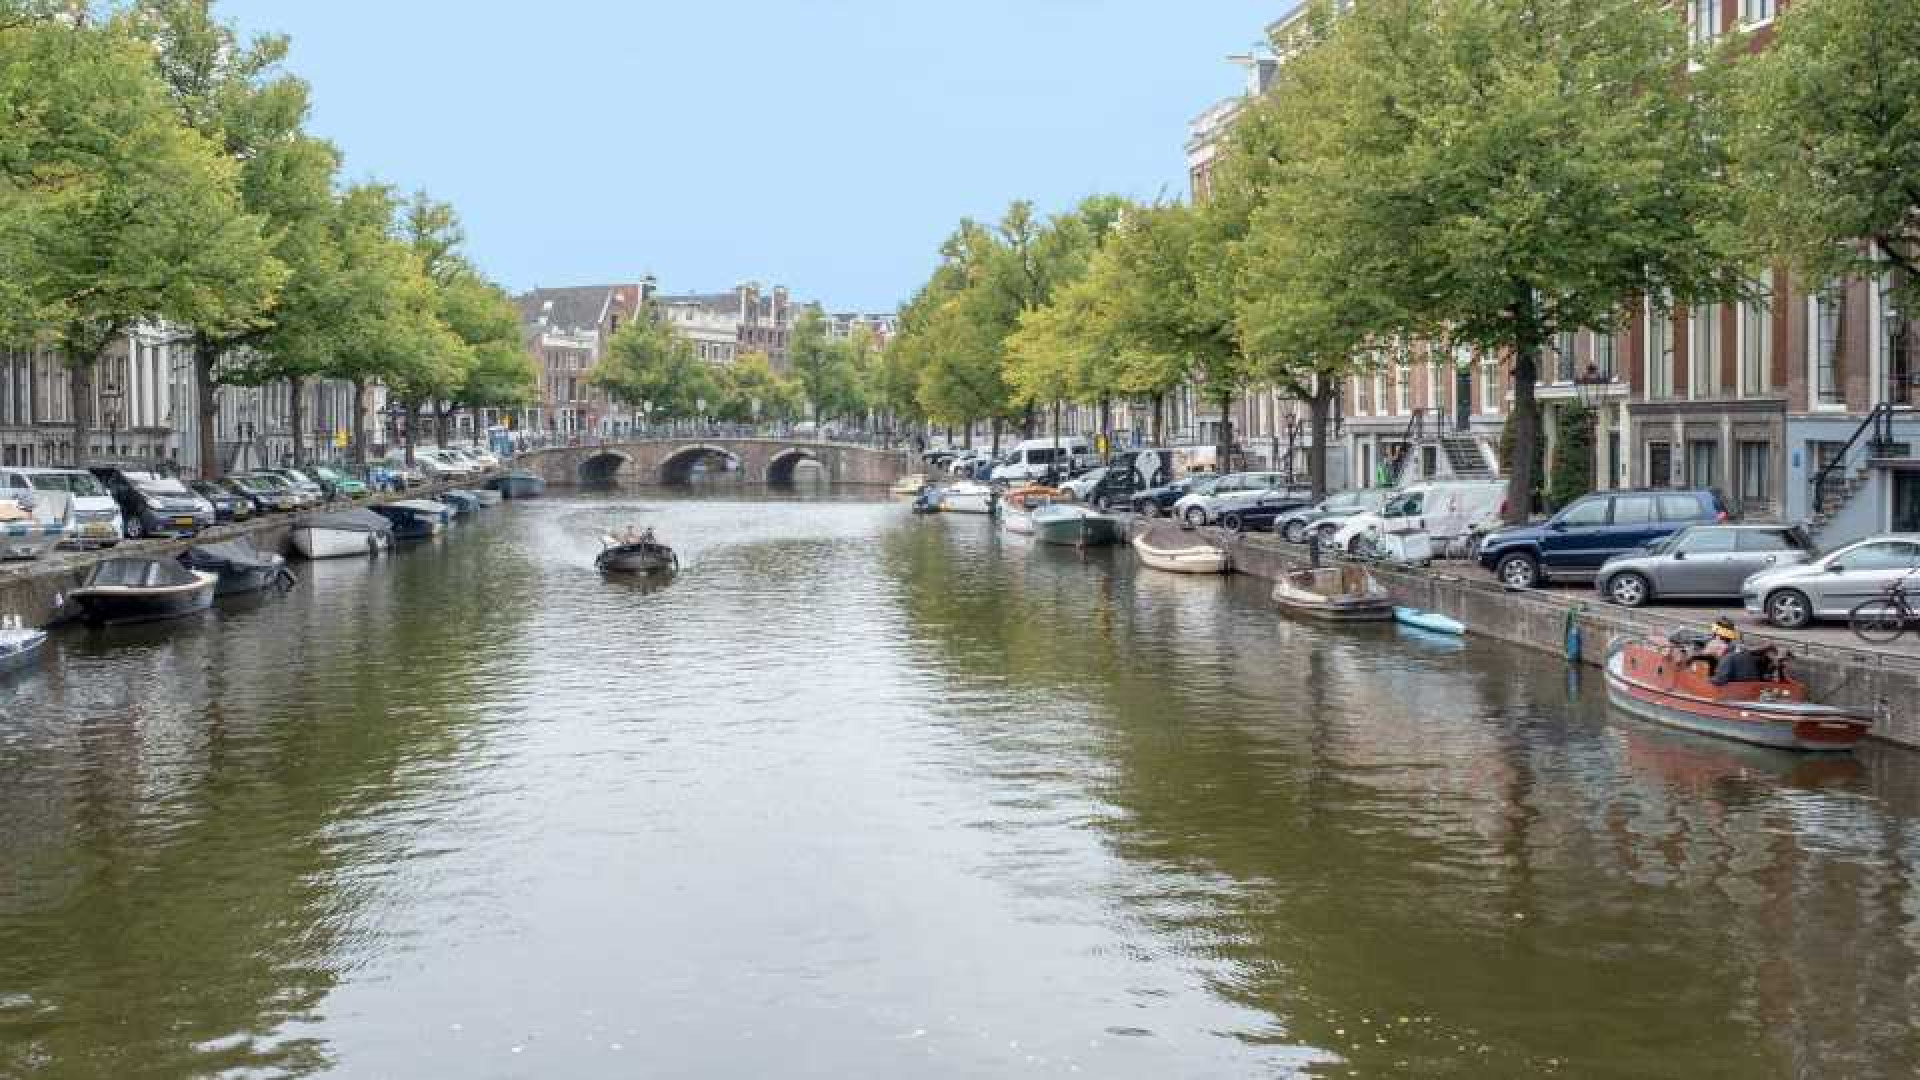 Jeroen van Koningsbrugge zet de bijl in vraagprijs van zijn fraaie grachtenpand in Amsterdam.